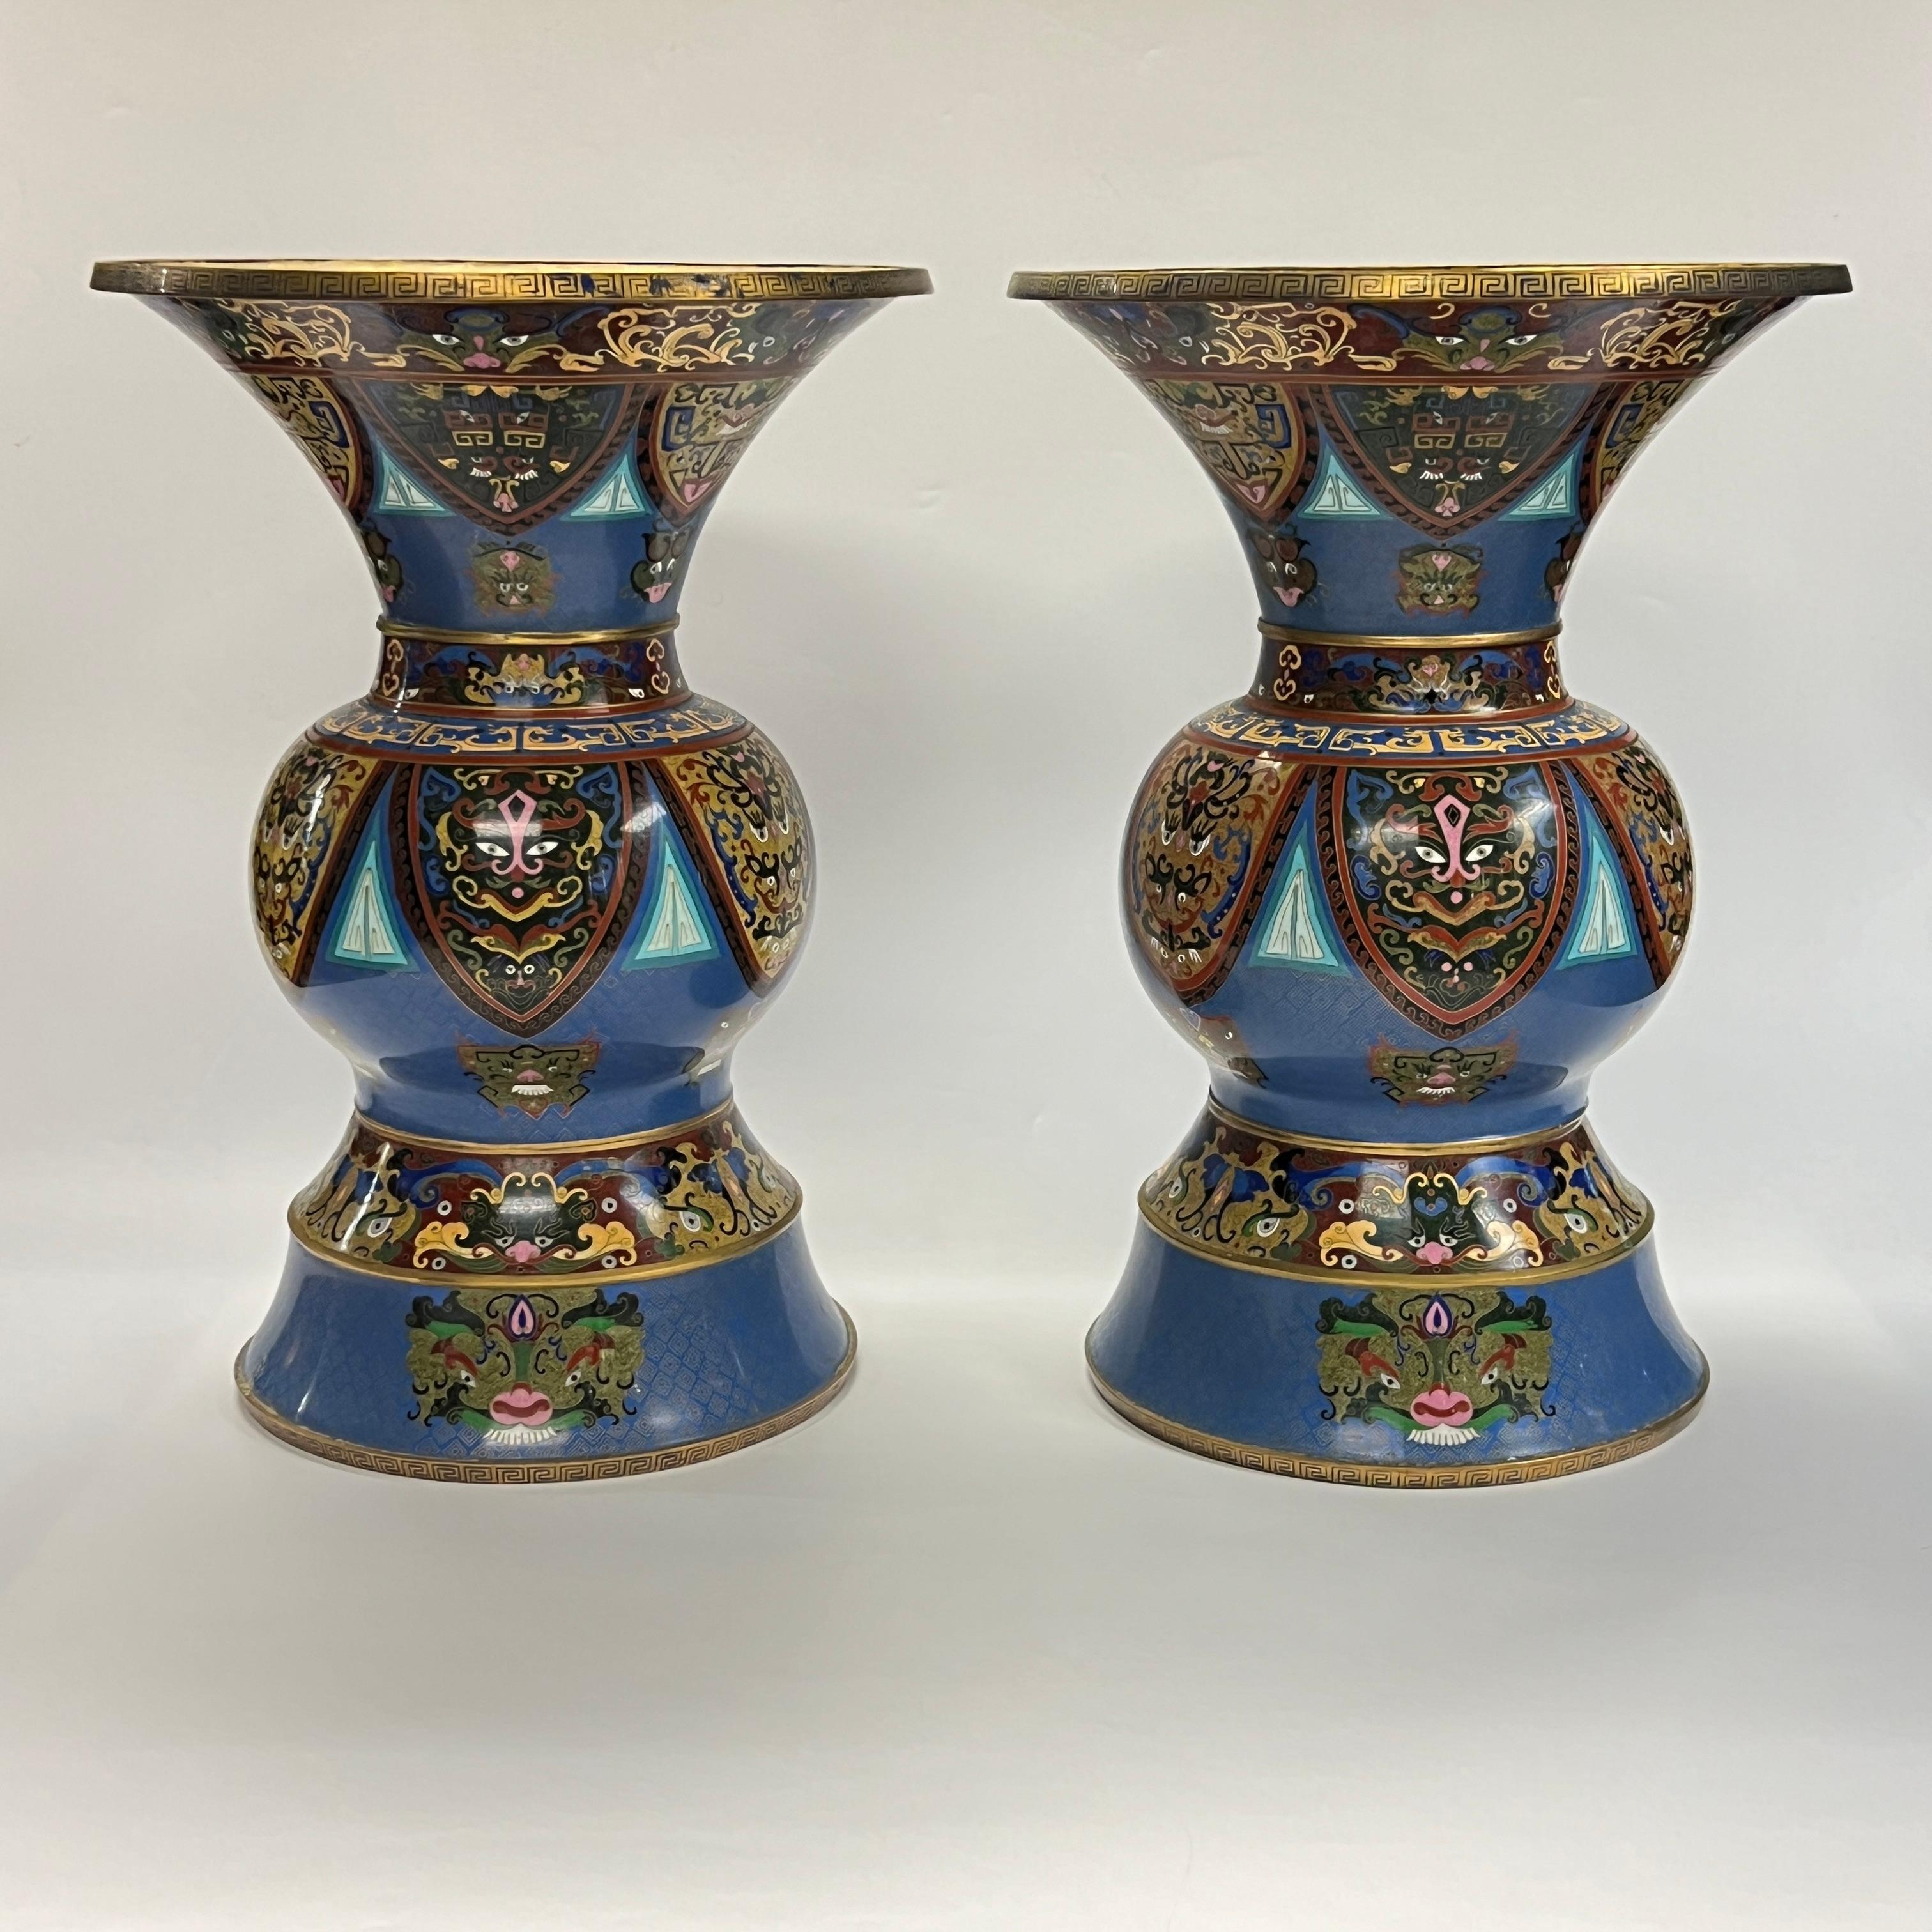 Paar sehr große und feinste Qualität, 24 Zoll hoch, antike chinesische Cloisonné-Vasen mit weit ausladenden Rändern mit feinen Cloisonné-Emaille-Motiven, darunter Foo-Löwen und exotische Masken.  